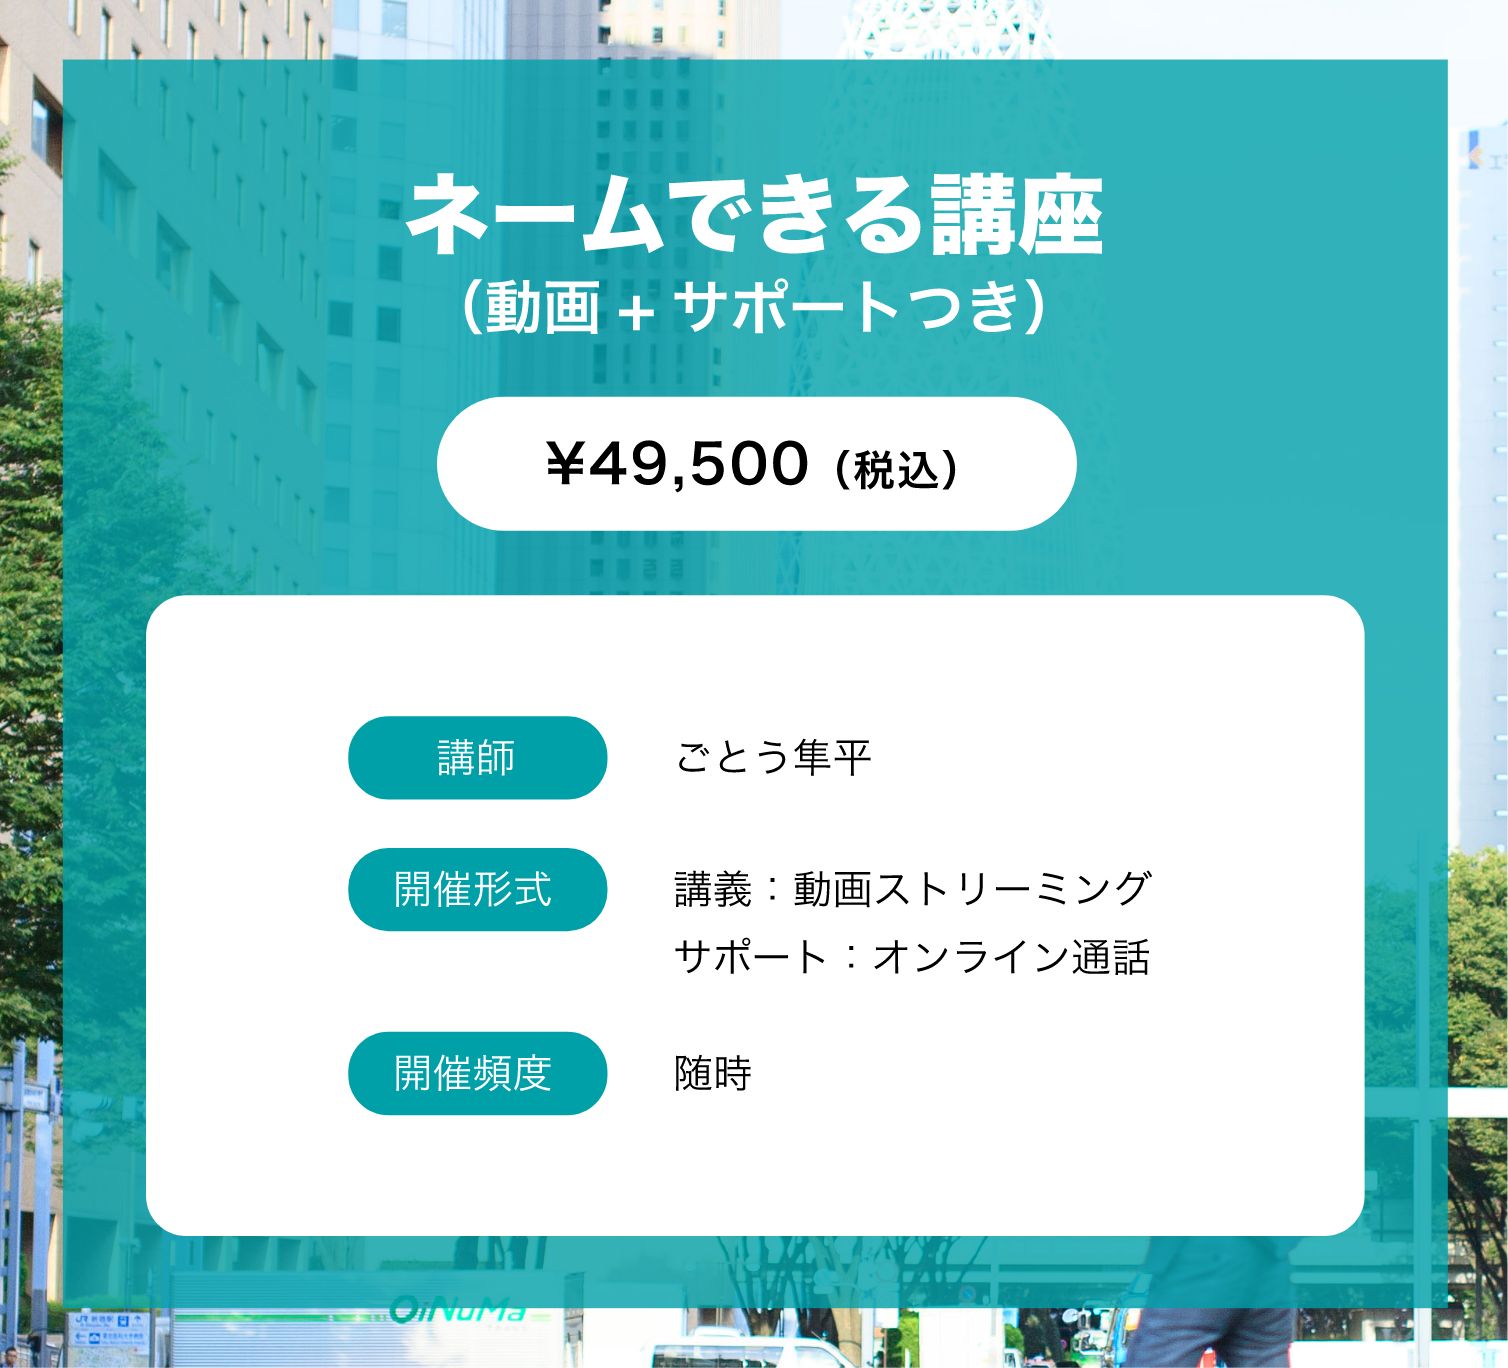 ネームできる講座（¥49,500）の紹介画像